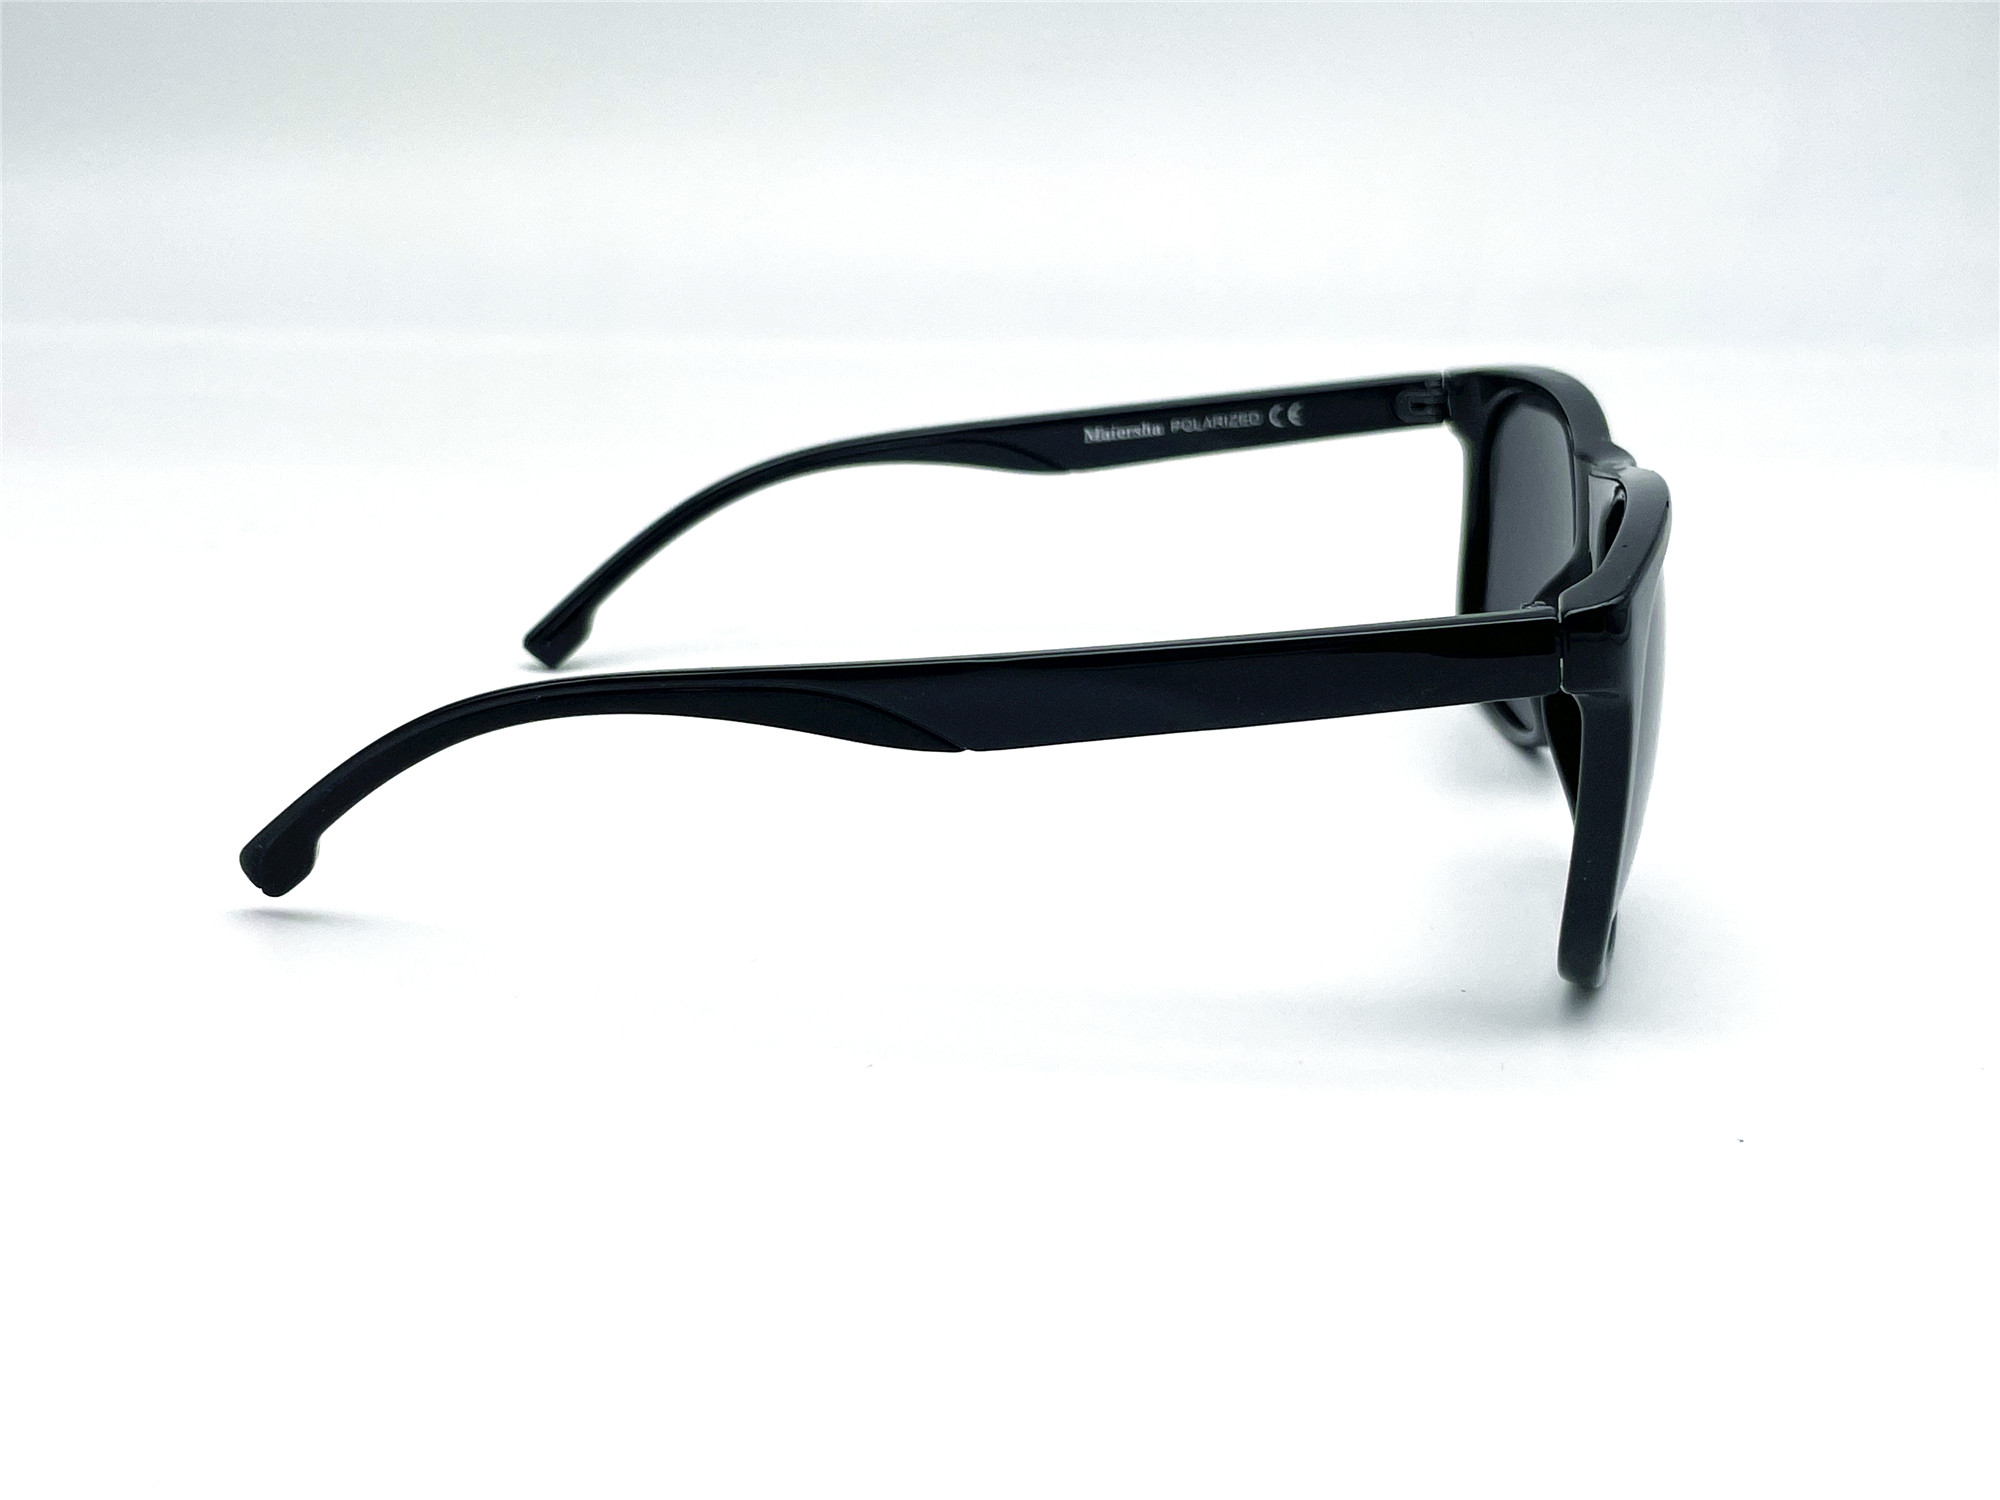  Солнцезащитные очки картинка Мужские Maiersha Polarized Стандартные P5056-C1 